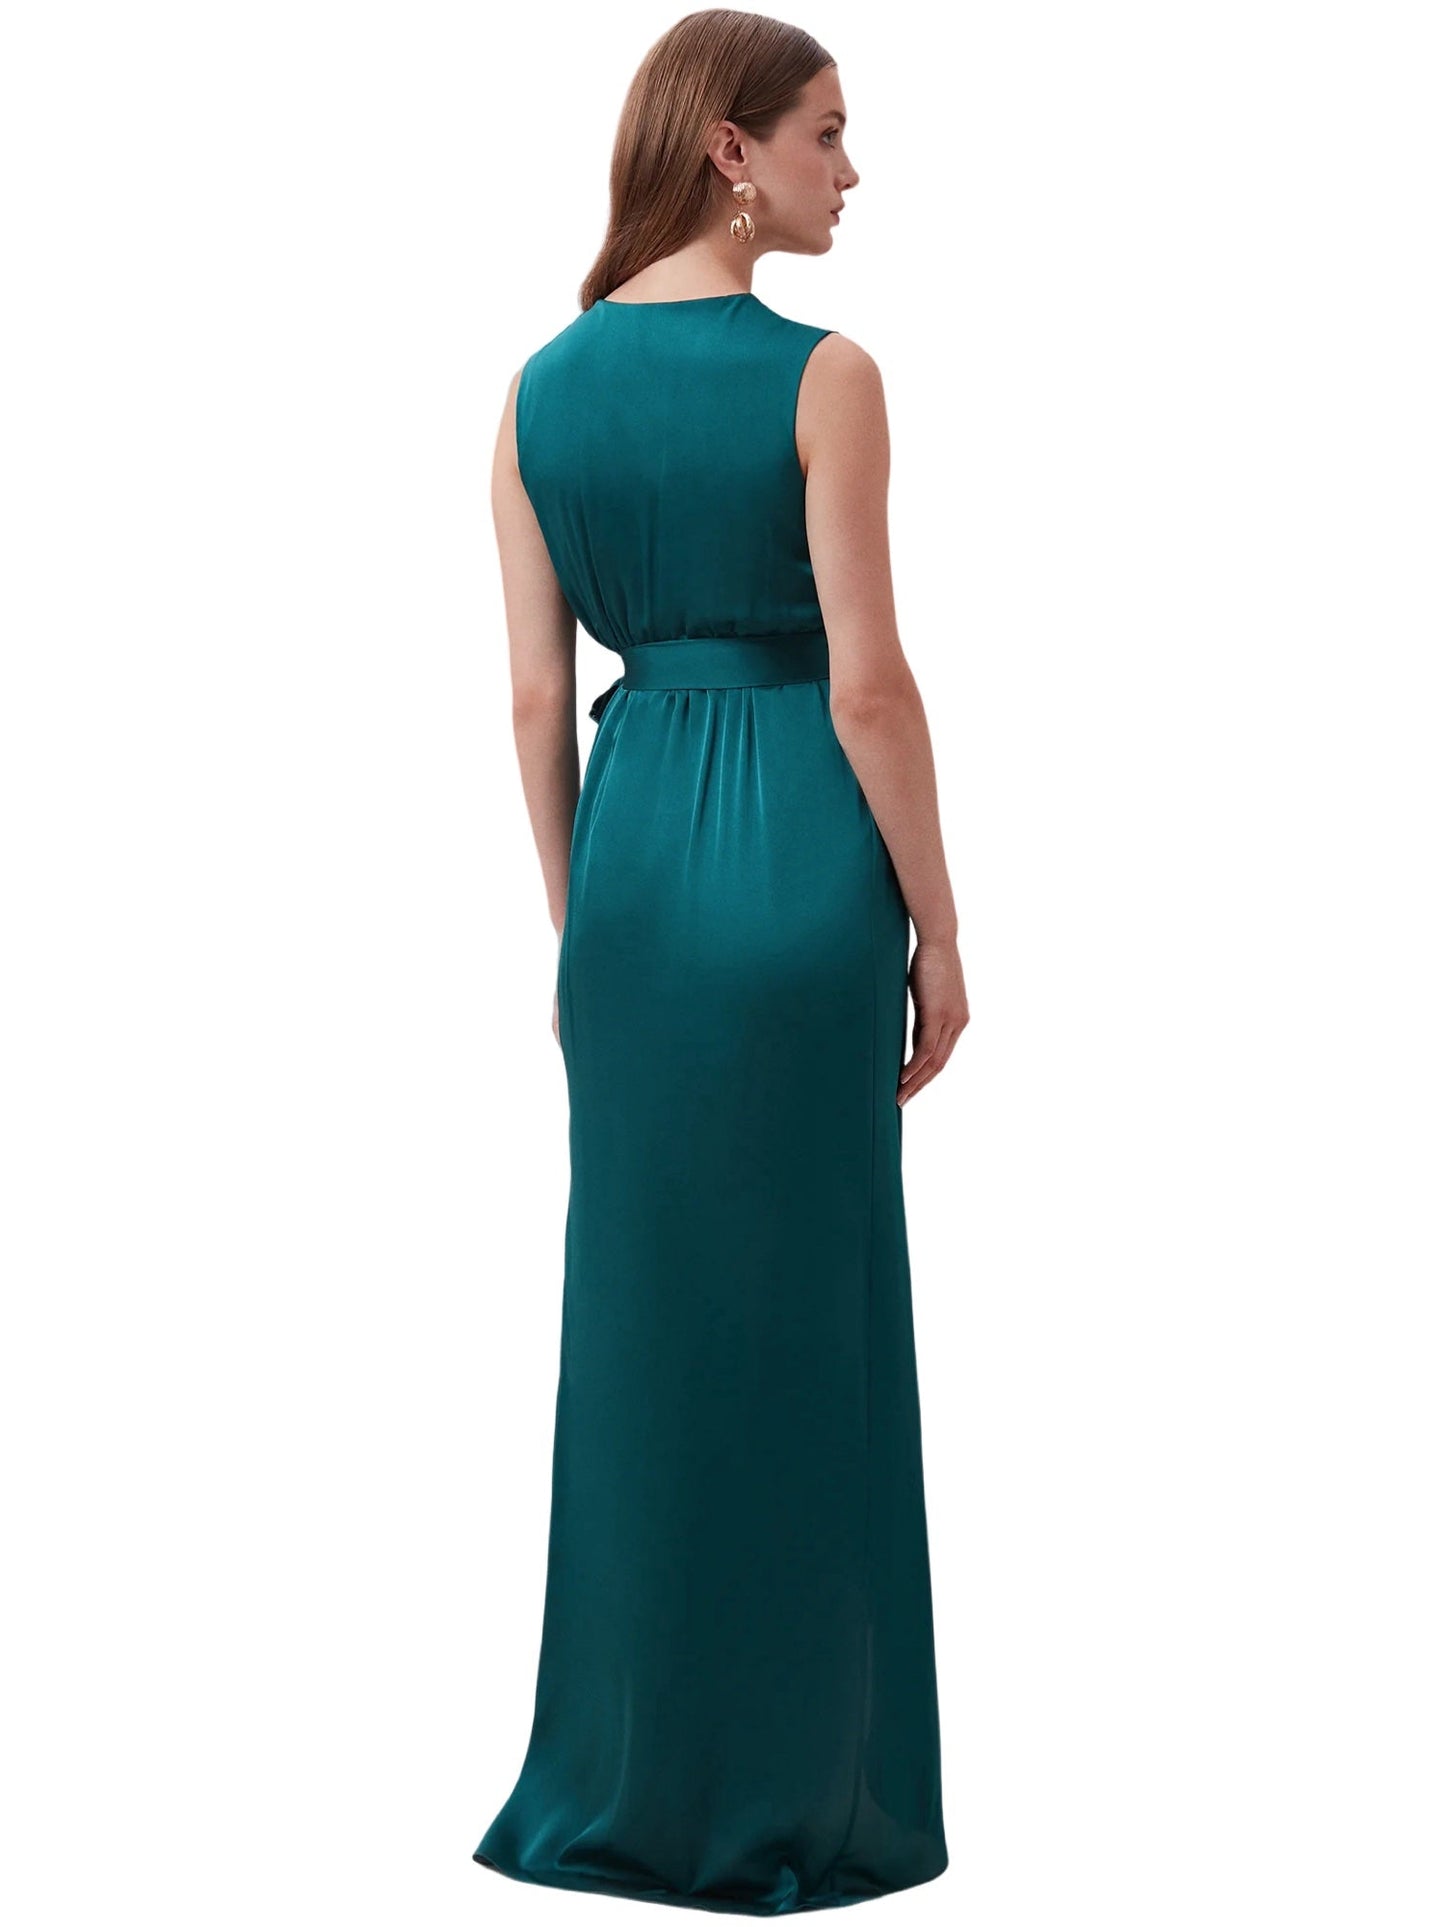 Satin Column V-Neck Sleeveless Dress-GD101920